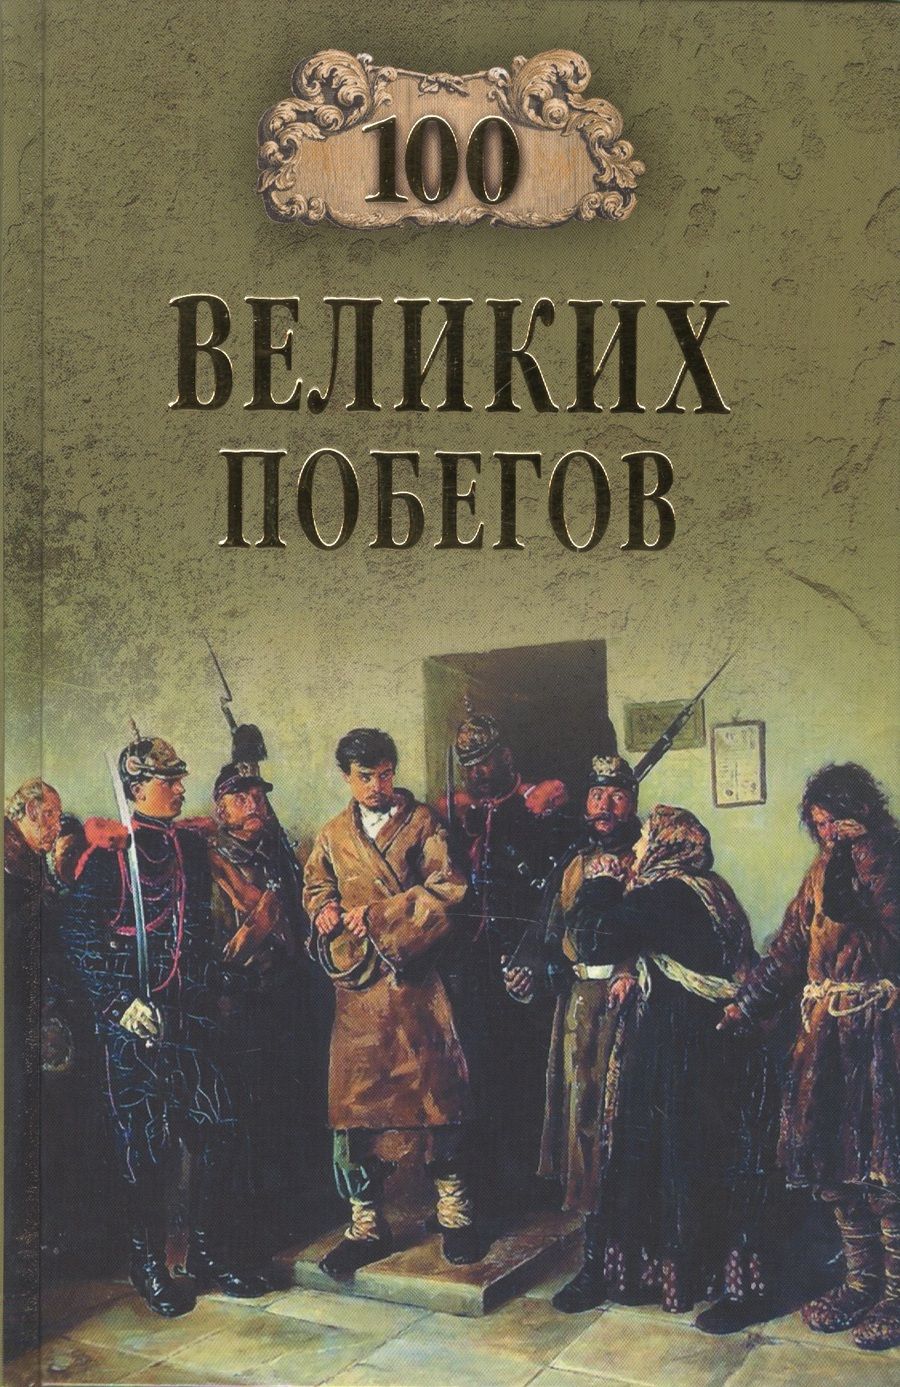 Обложка книги "Сергей Нечаев: 100 великих побегов"